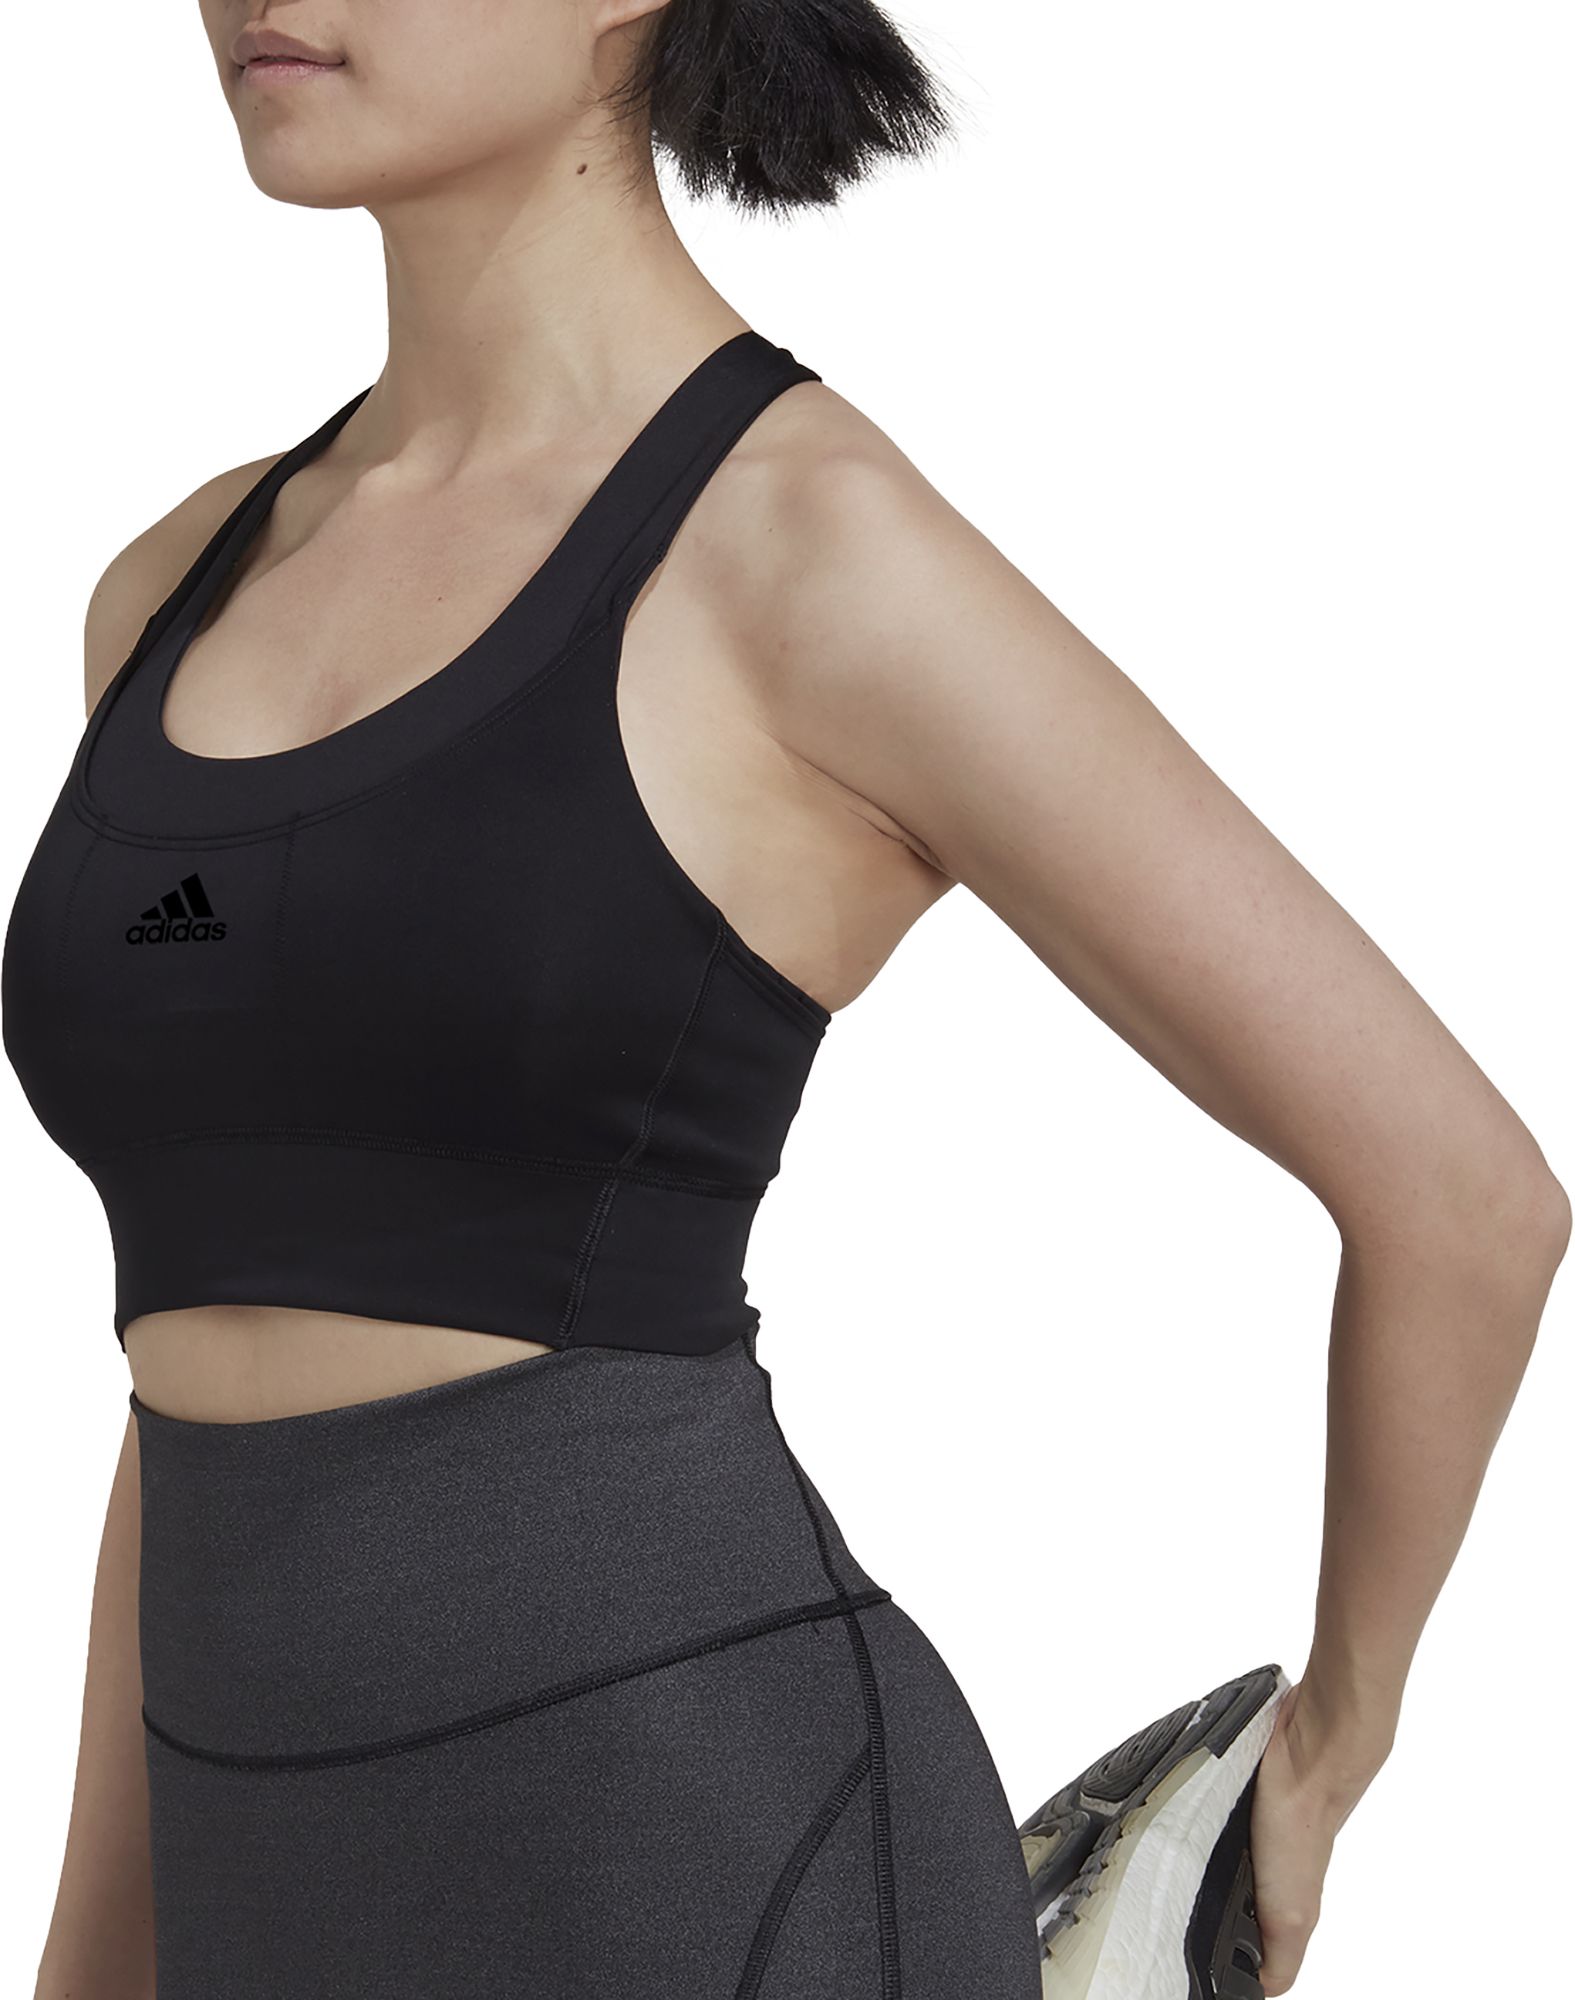 Adidas / Women's Running Medium-Support Pocket Bra